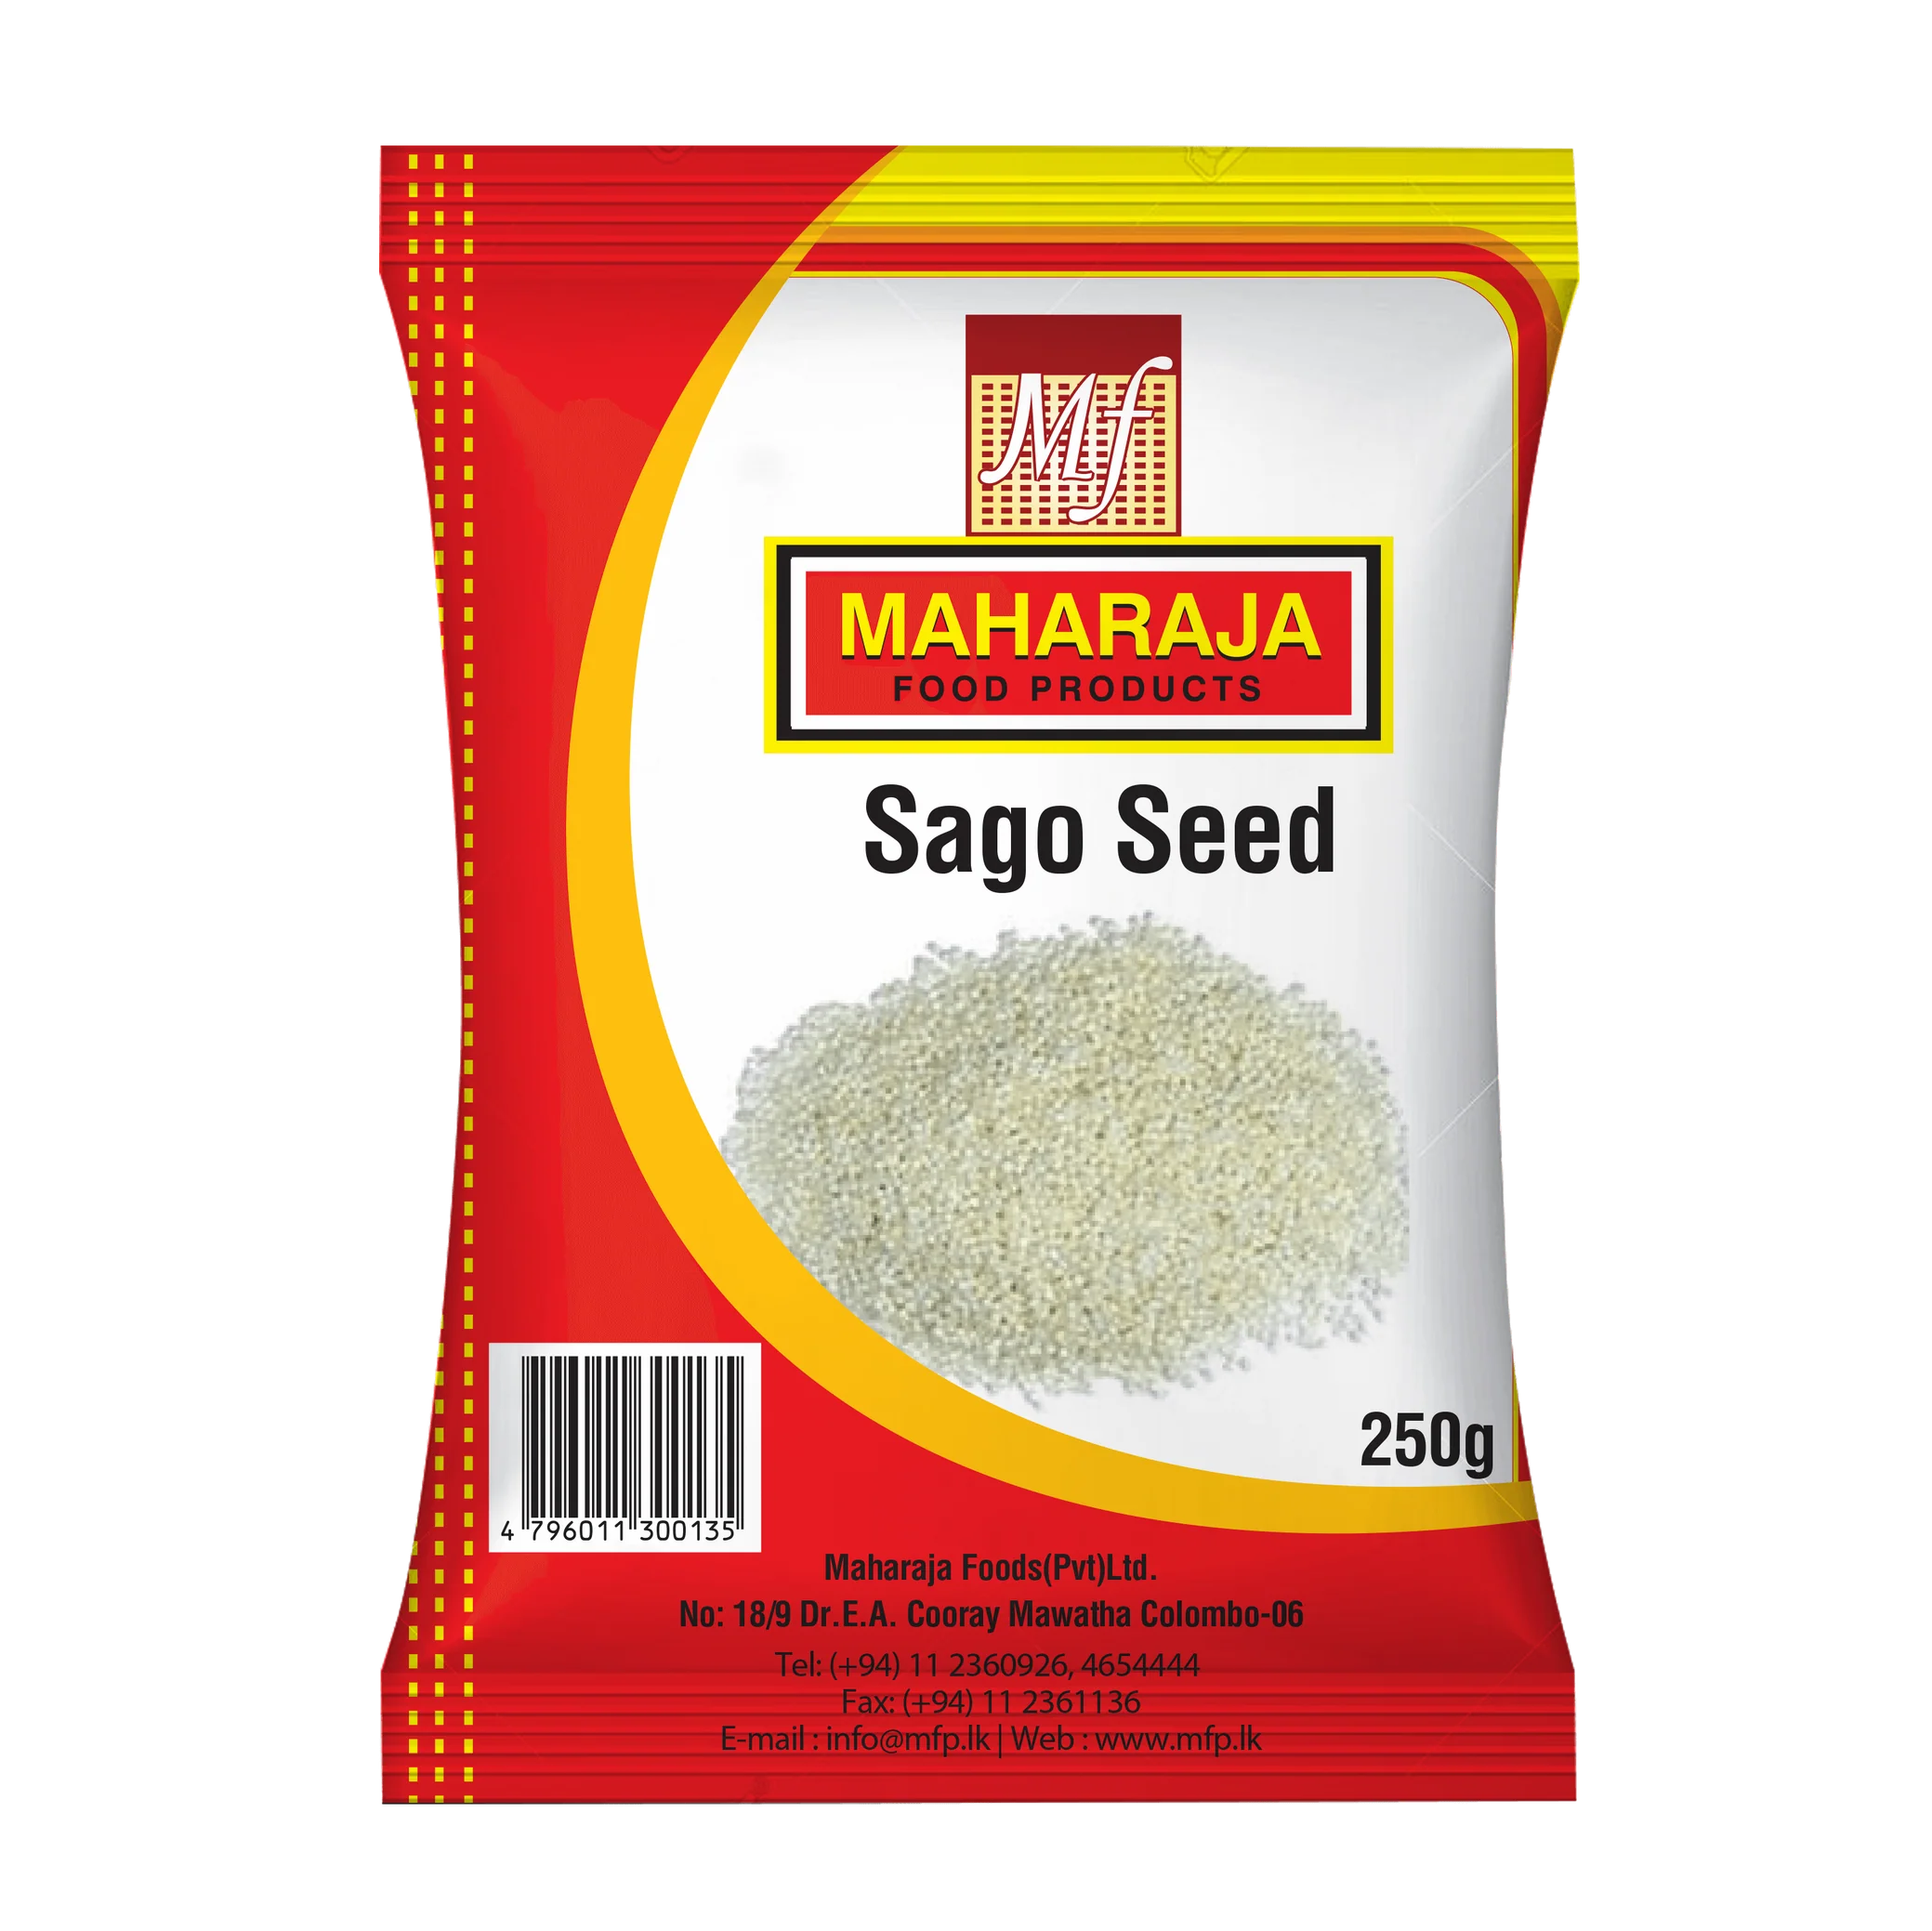 Sago seed